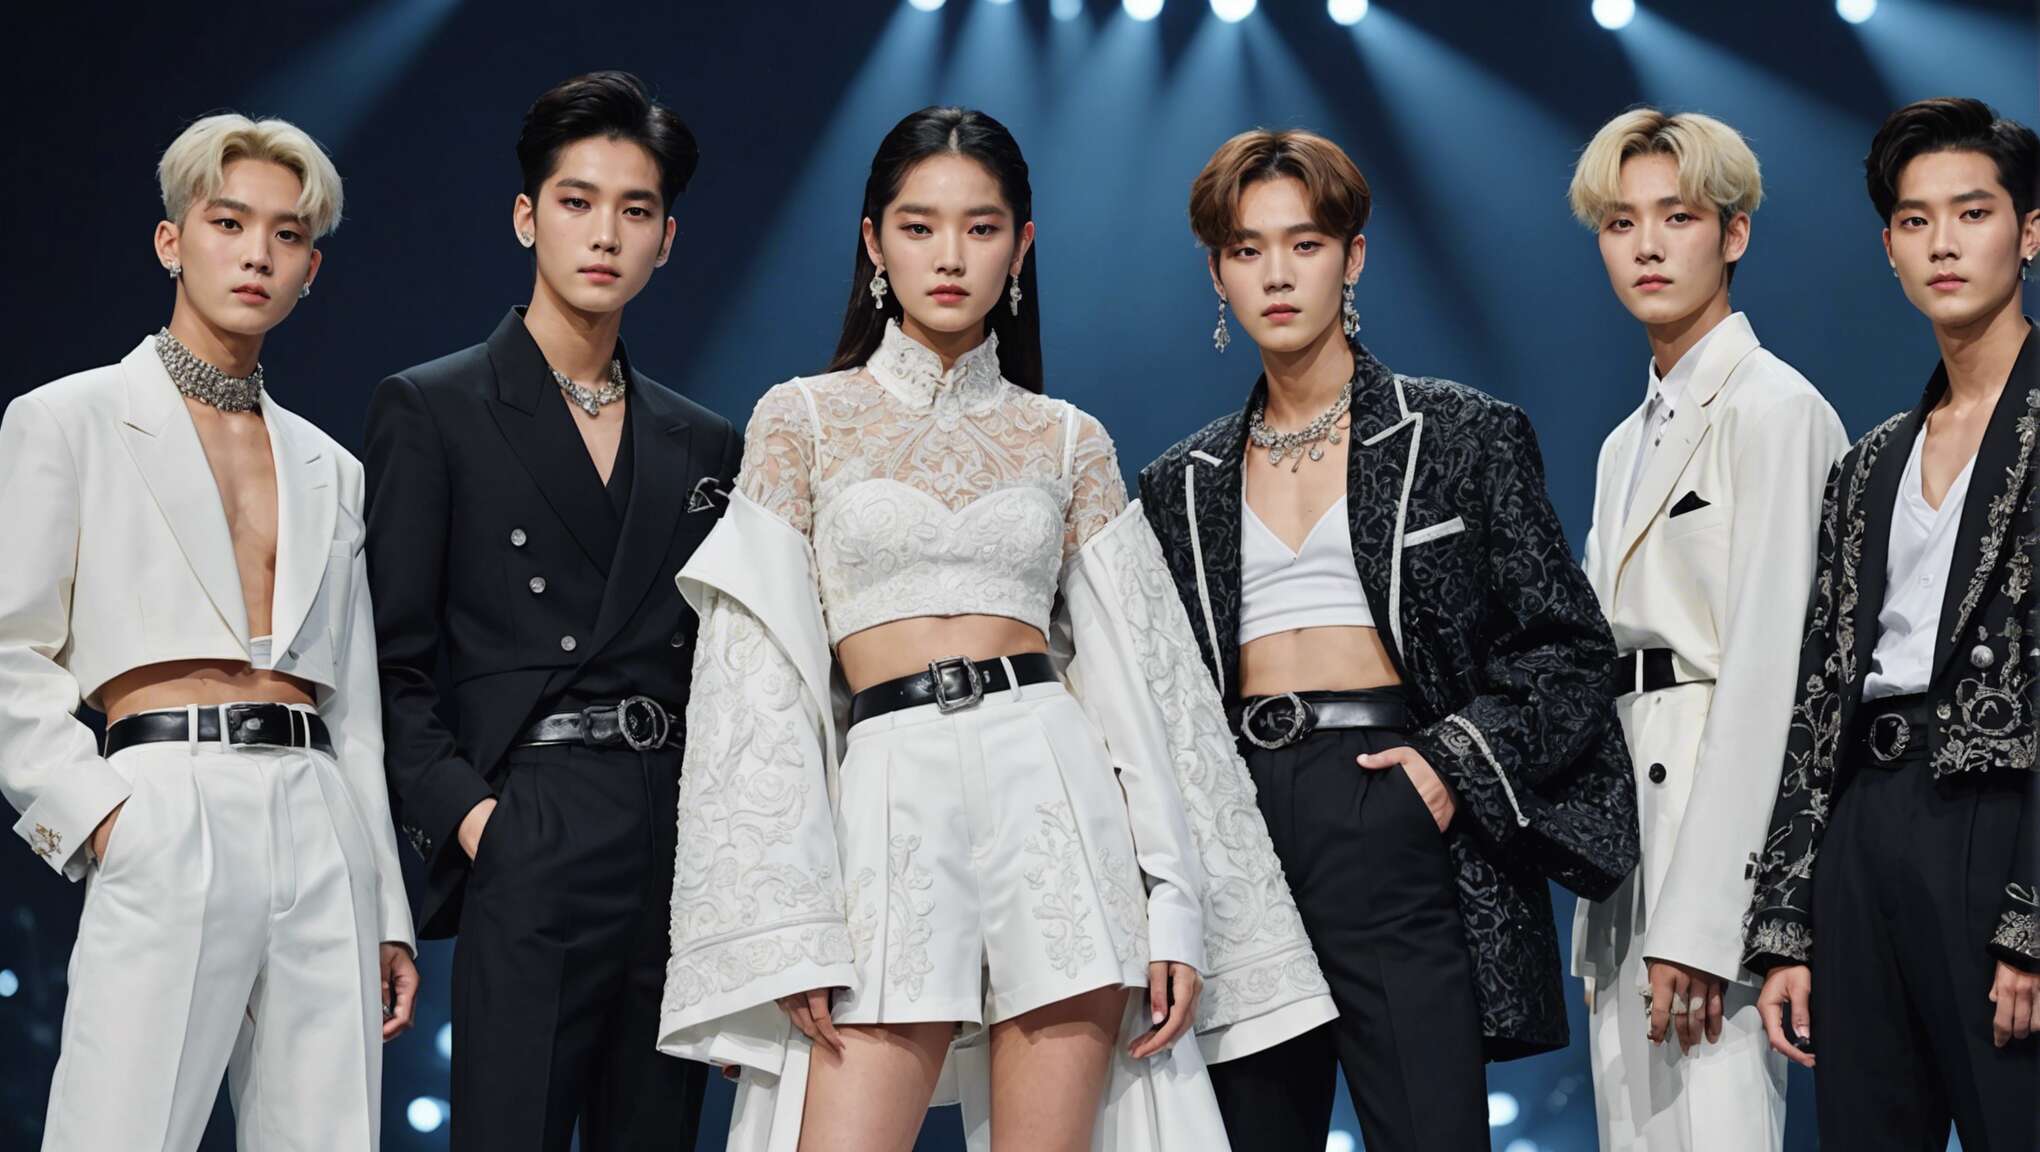 La signature vestimentaire des concerts k-pop : entre tradition et modernité